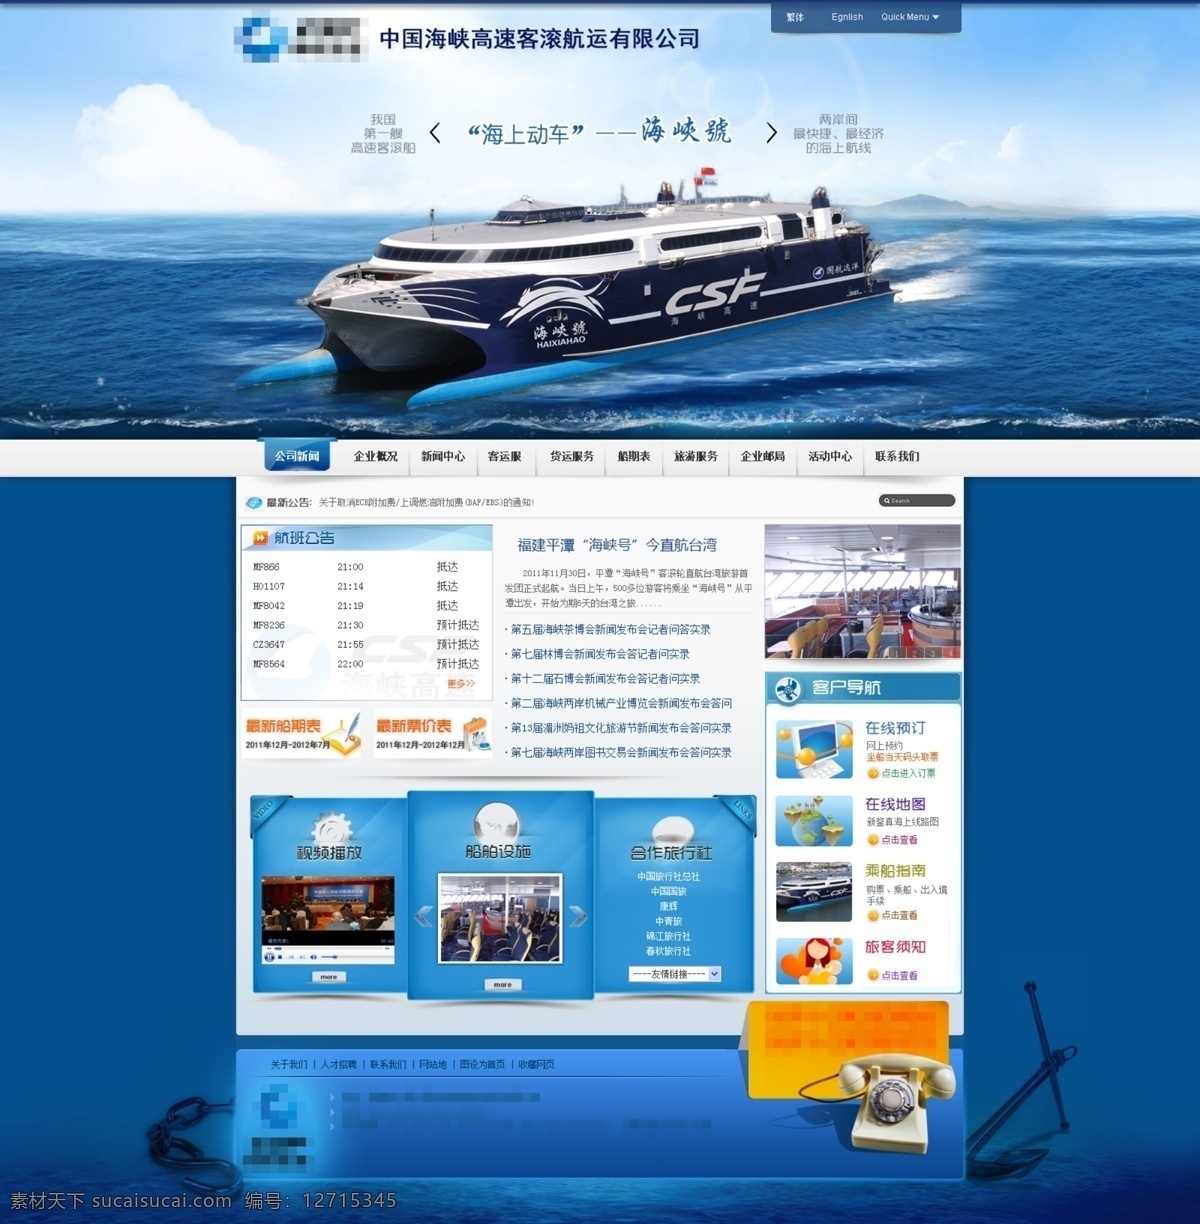 蓝色 船舶 公司 网站 模板 公司网站模板 海洋轮船 集装箱船 蓝色网站 蓝色网站模板 轮船 轮船网站 企业网站 企业网站模板 企业站 网页设计素材 网站模板